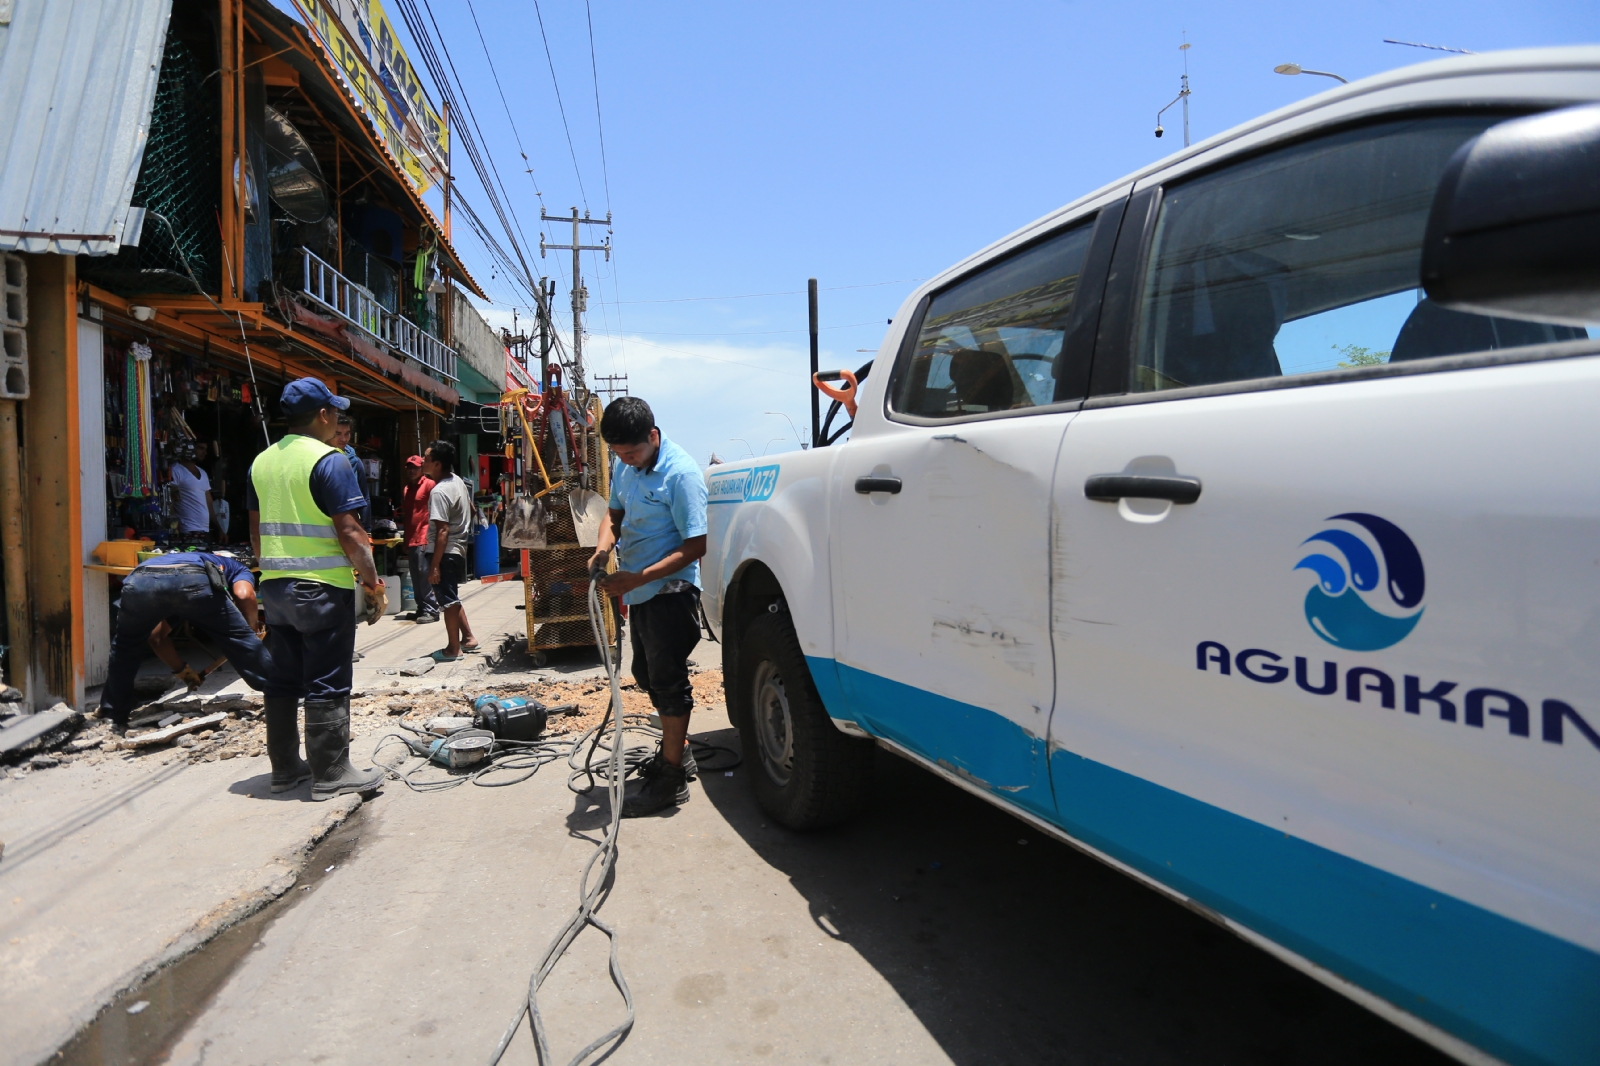 Aguakan, la empresa con más denuncias en Quintana Roo: Profeco